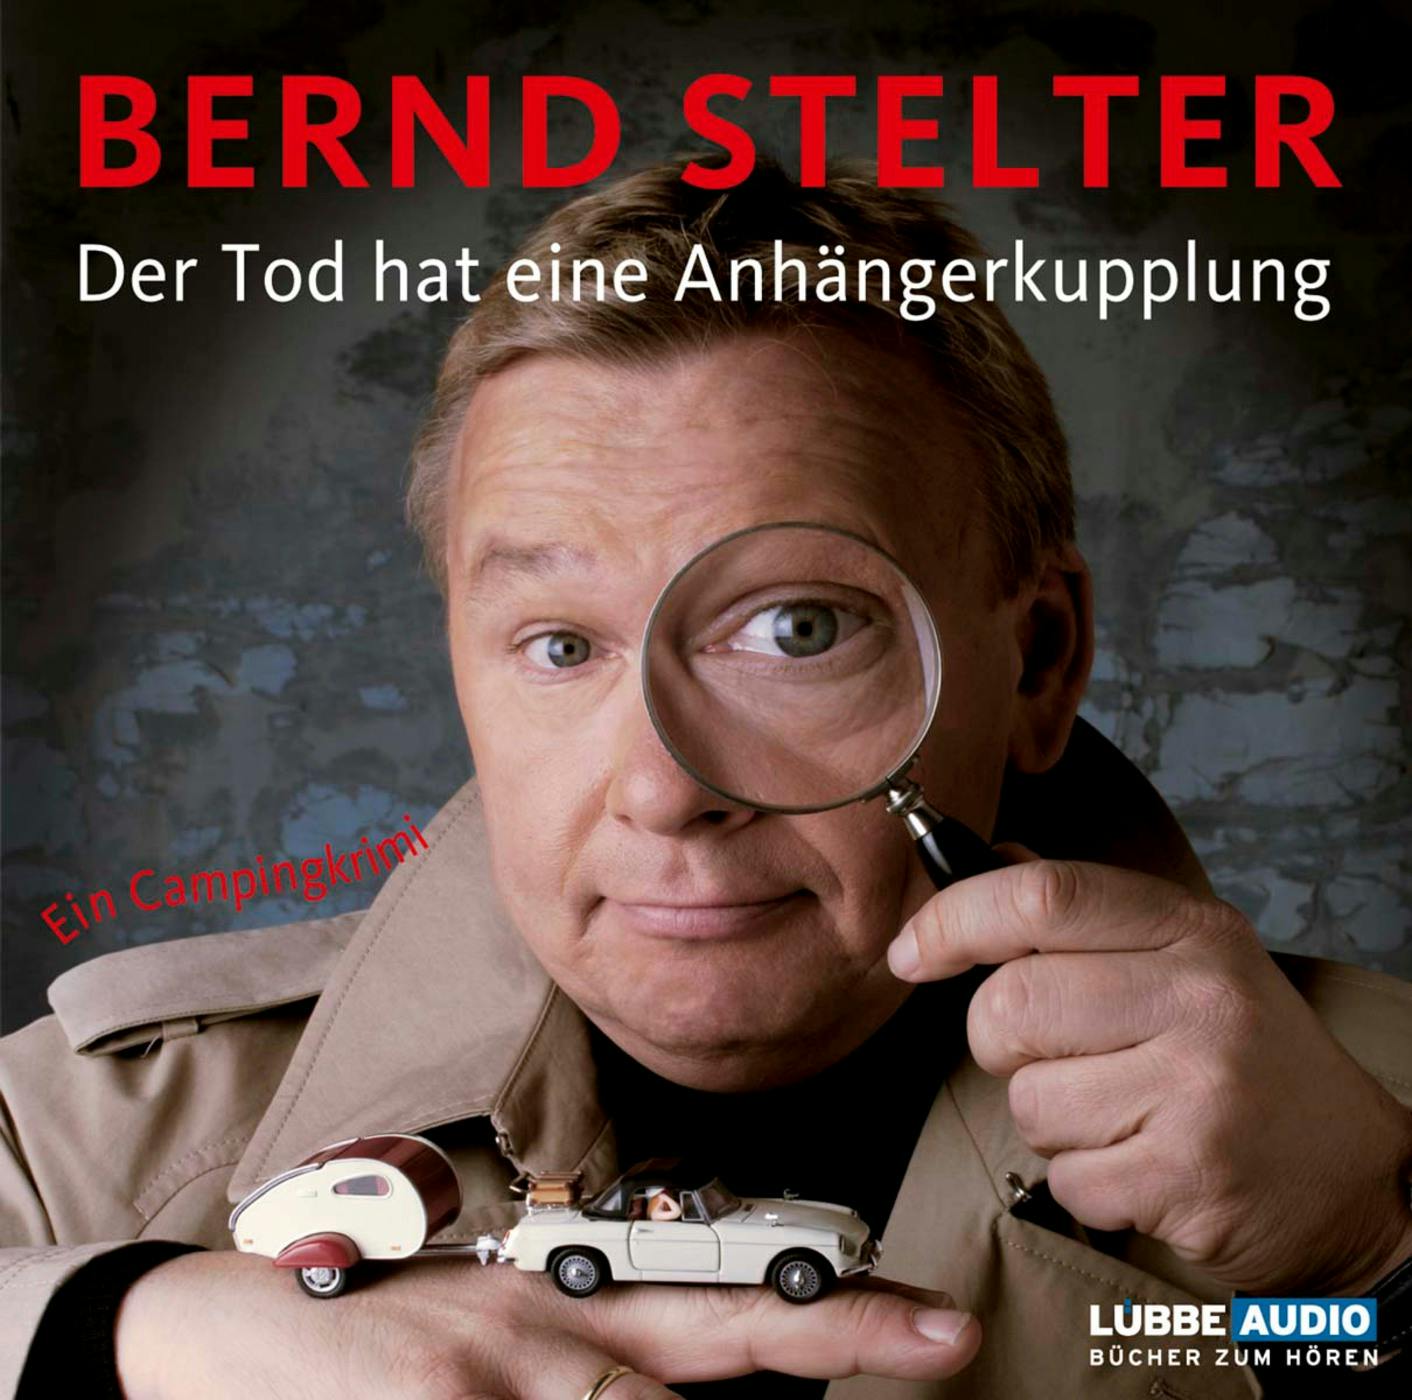 Der Tod hat eine Anhängerkupplung - Bernd Stelter